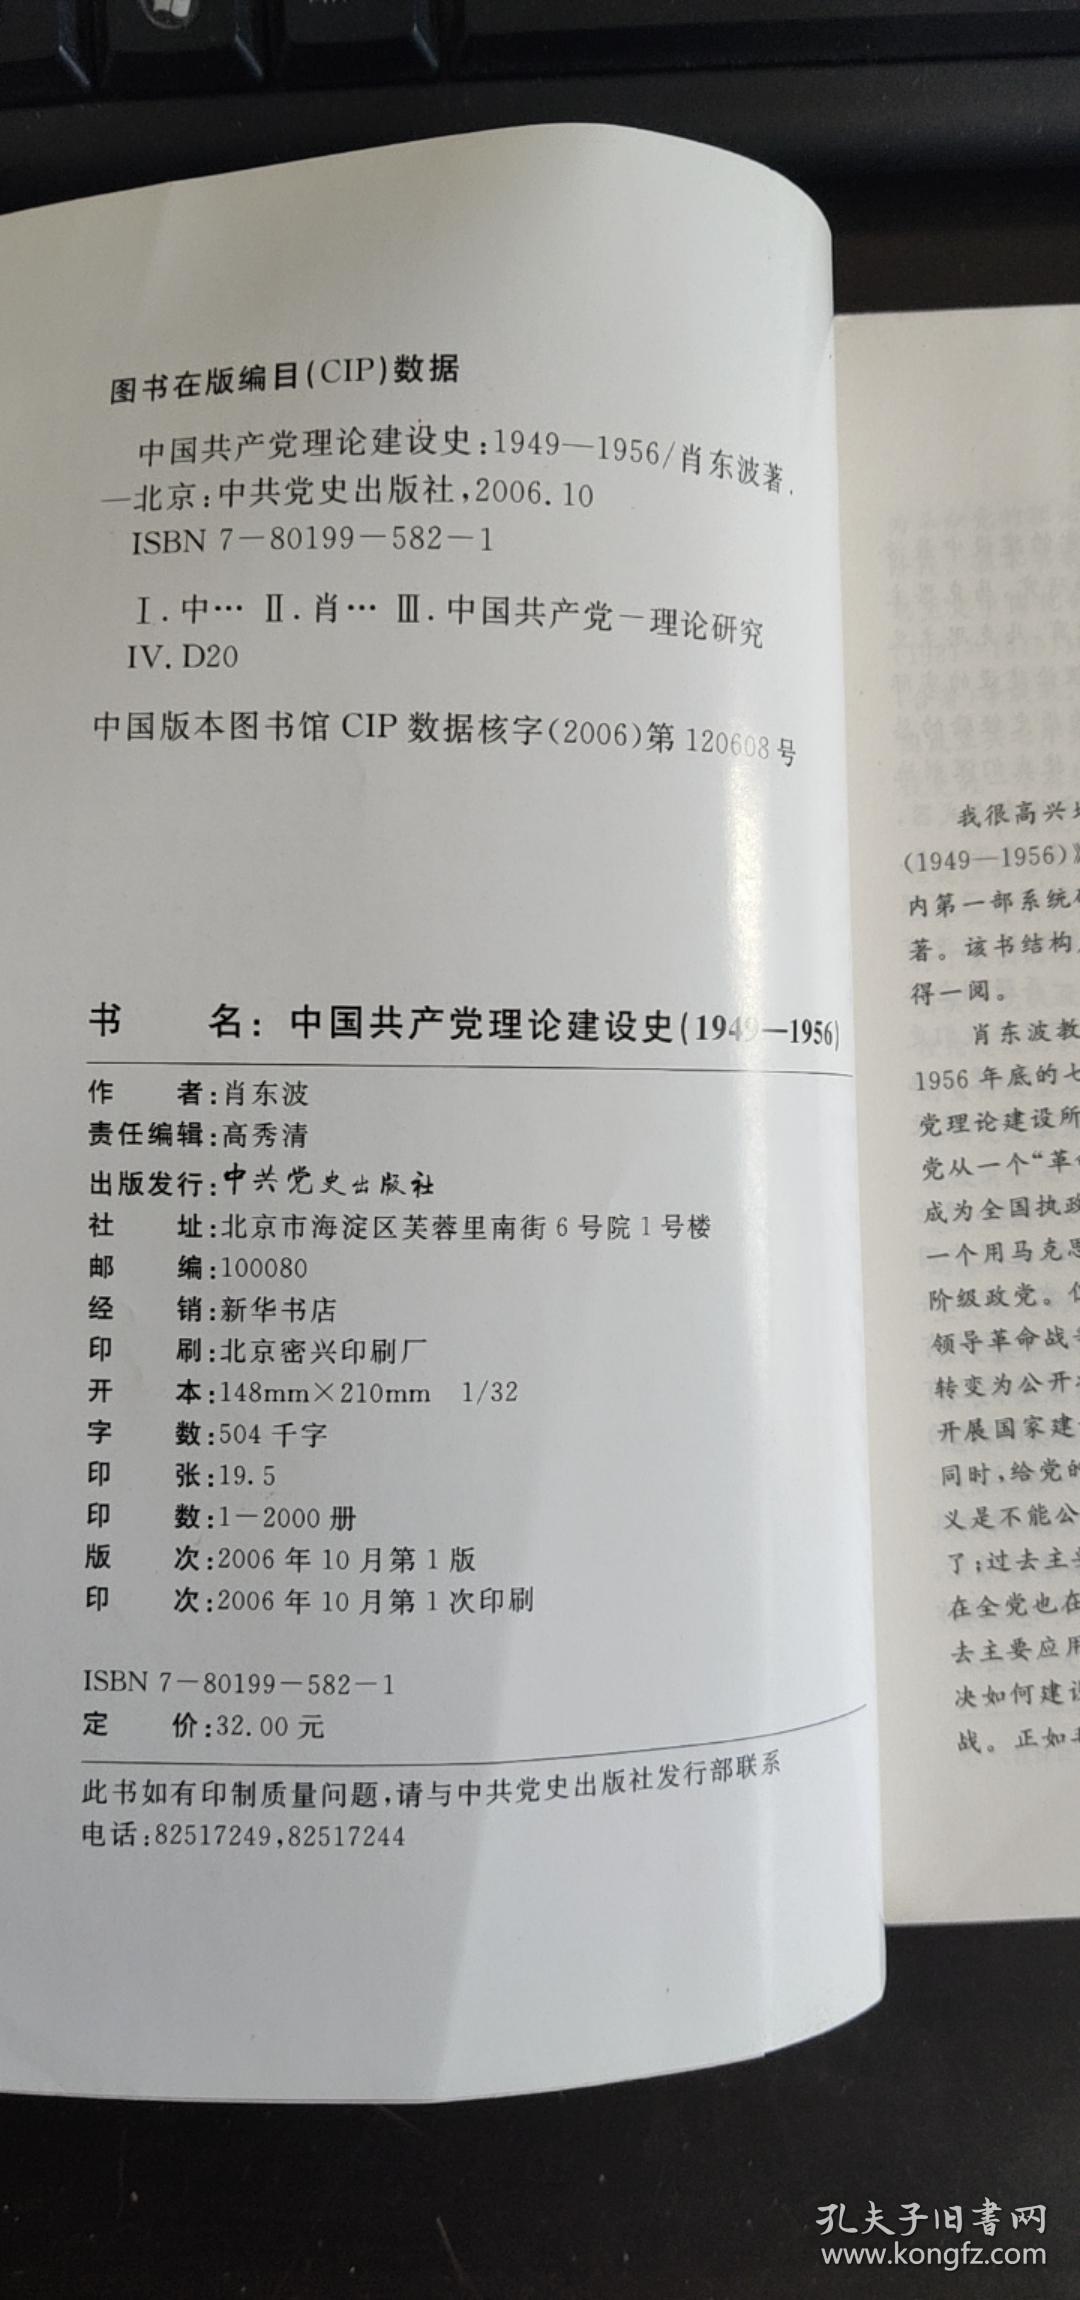 中国共产党理论建设史1949--1956 肖东波 / 中共党史